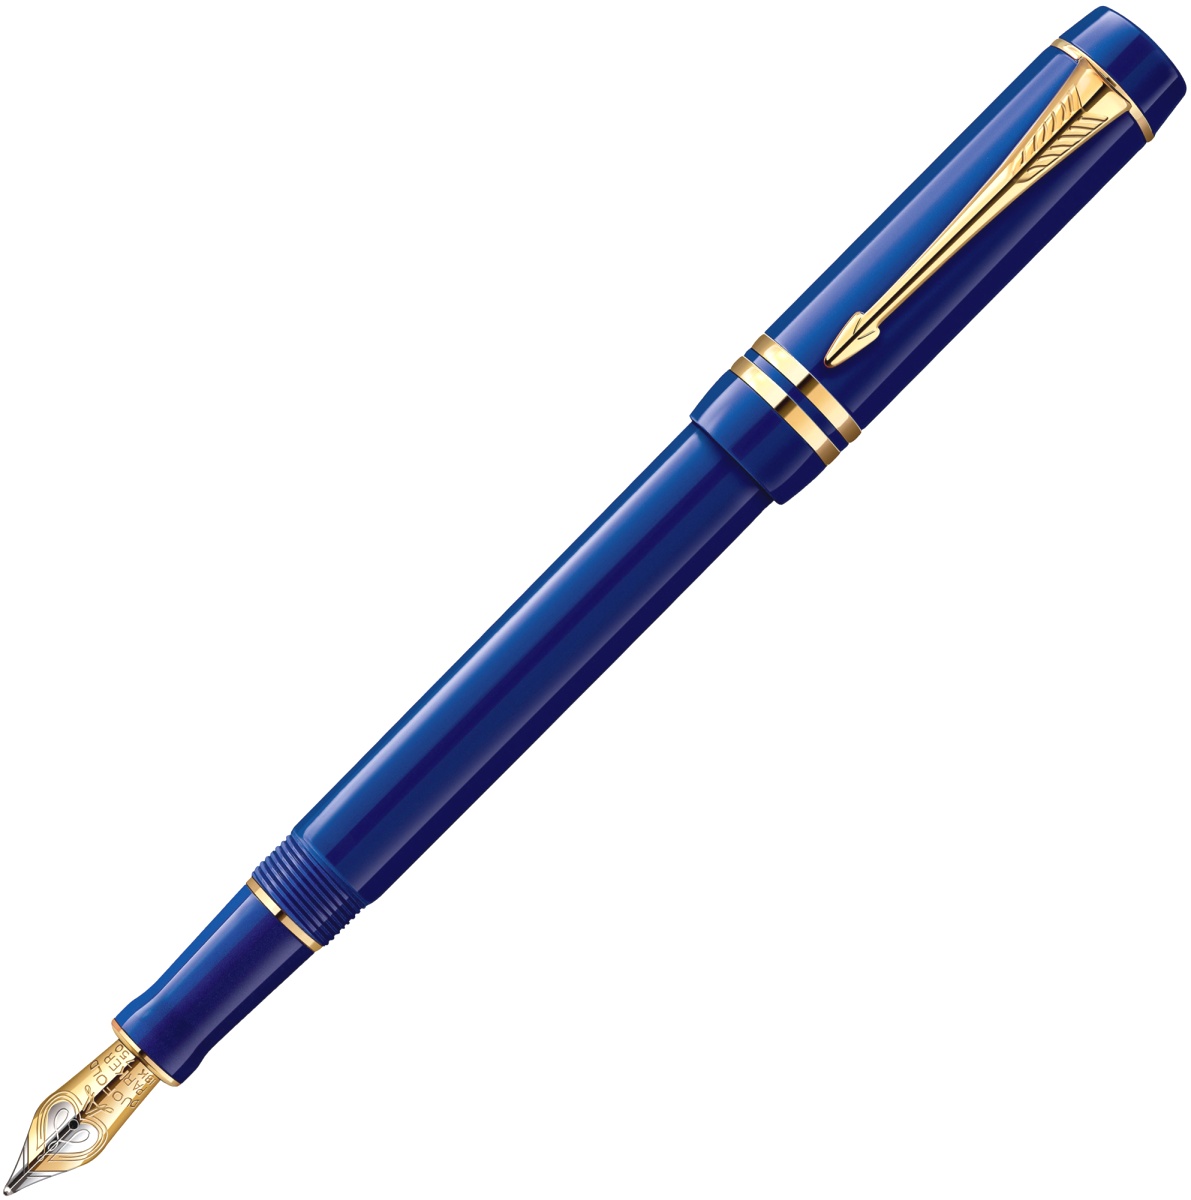 Перьевая ручка Parker Duofold Historical Colors Centennial F77, Lapis Lasuli GT (Перо M)